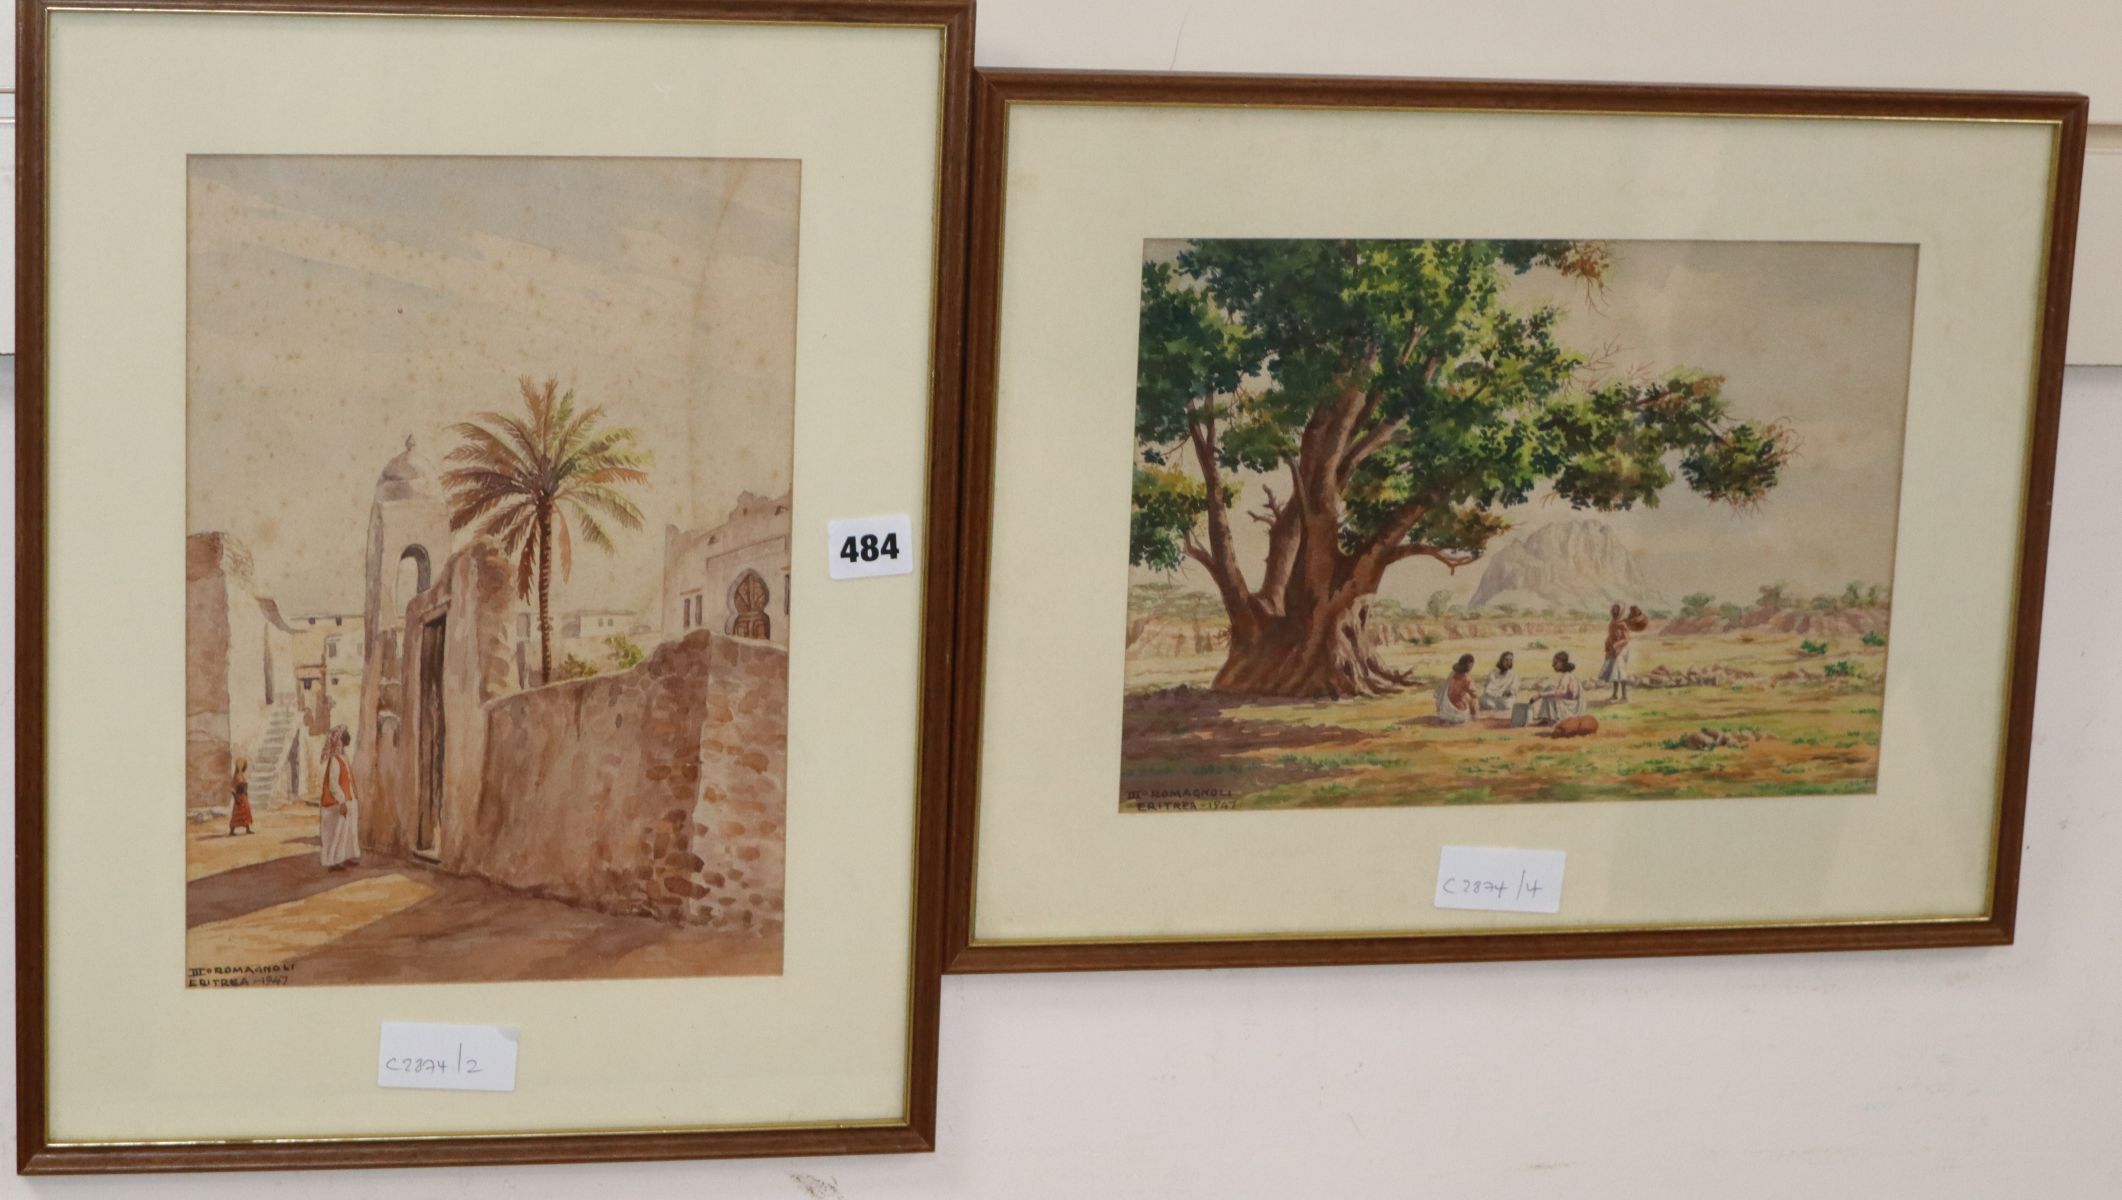 Giovanni Romagnoli, 2 watercolours, Scenes in Eritrea 1947, 22 x 30cm and 30 x 22cm